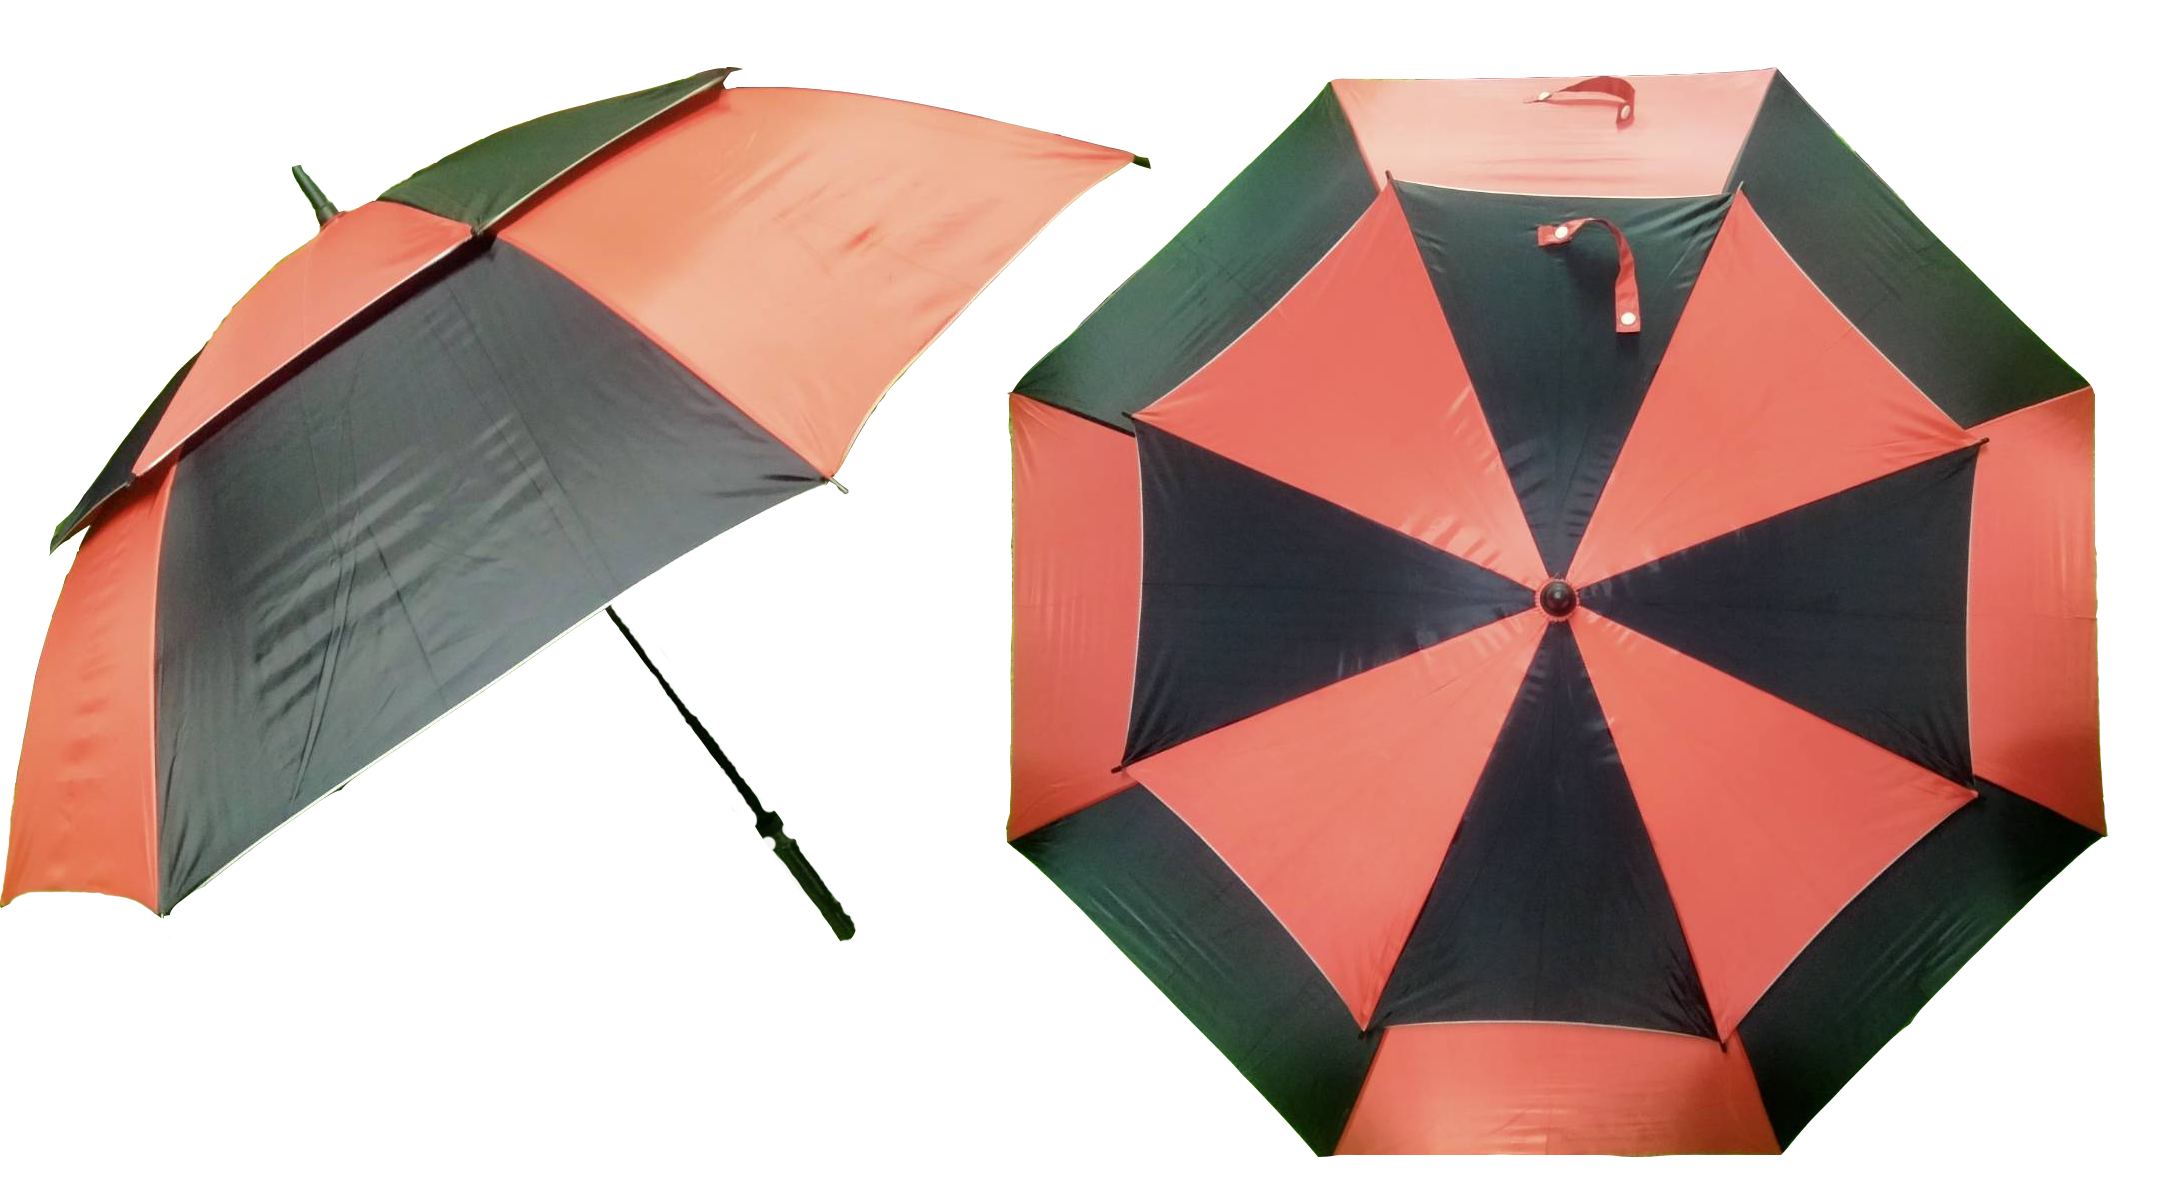 ร่มกอล์ฟ UV 2 ชั้น 32 นิ้ว Golf umbrella